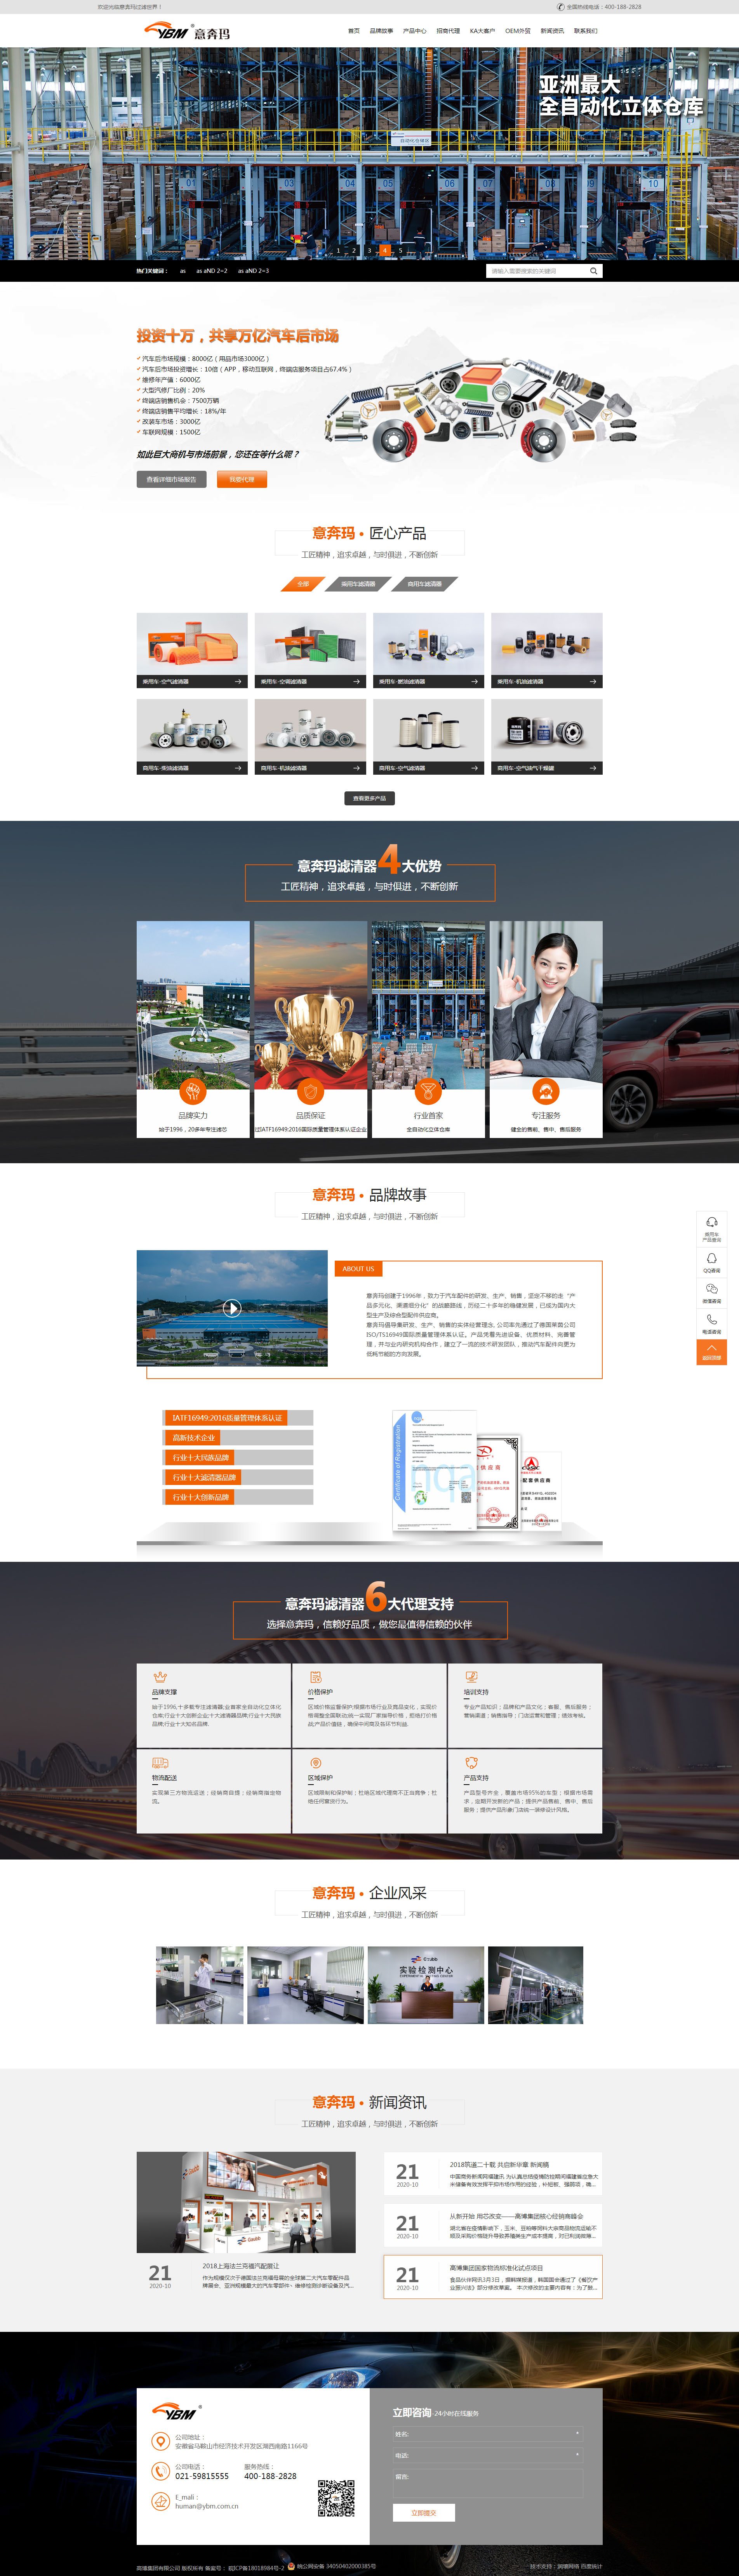 上海网站定制开发公司